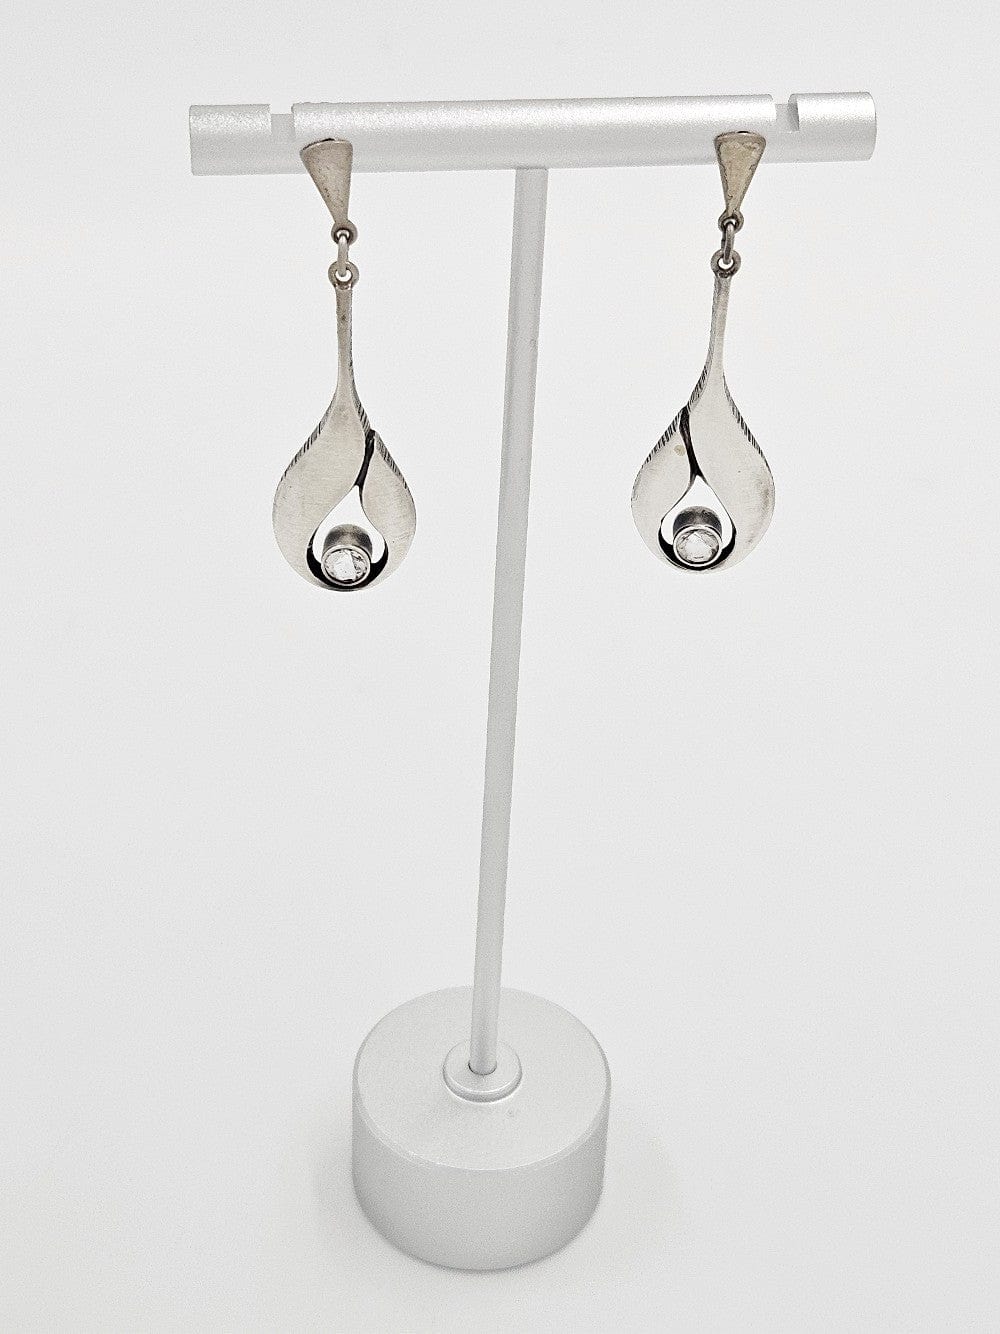 Karl Laine Jewelry Finnish Designer Karl Laine Modernist Sterling & Quartz Necklace Earrings Set 60s